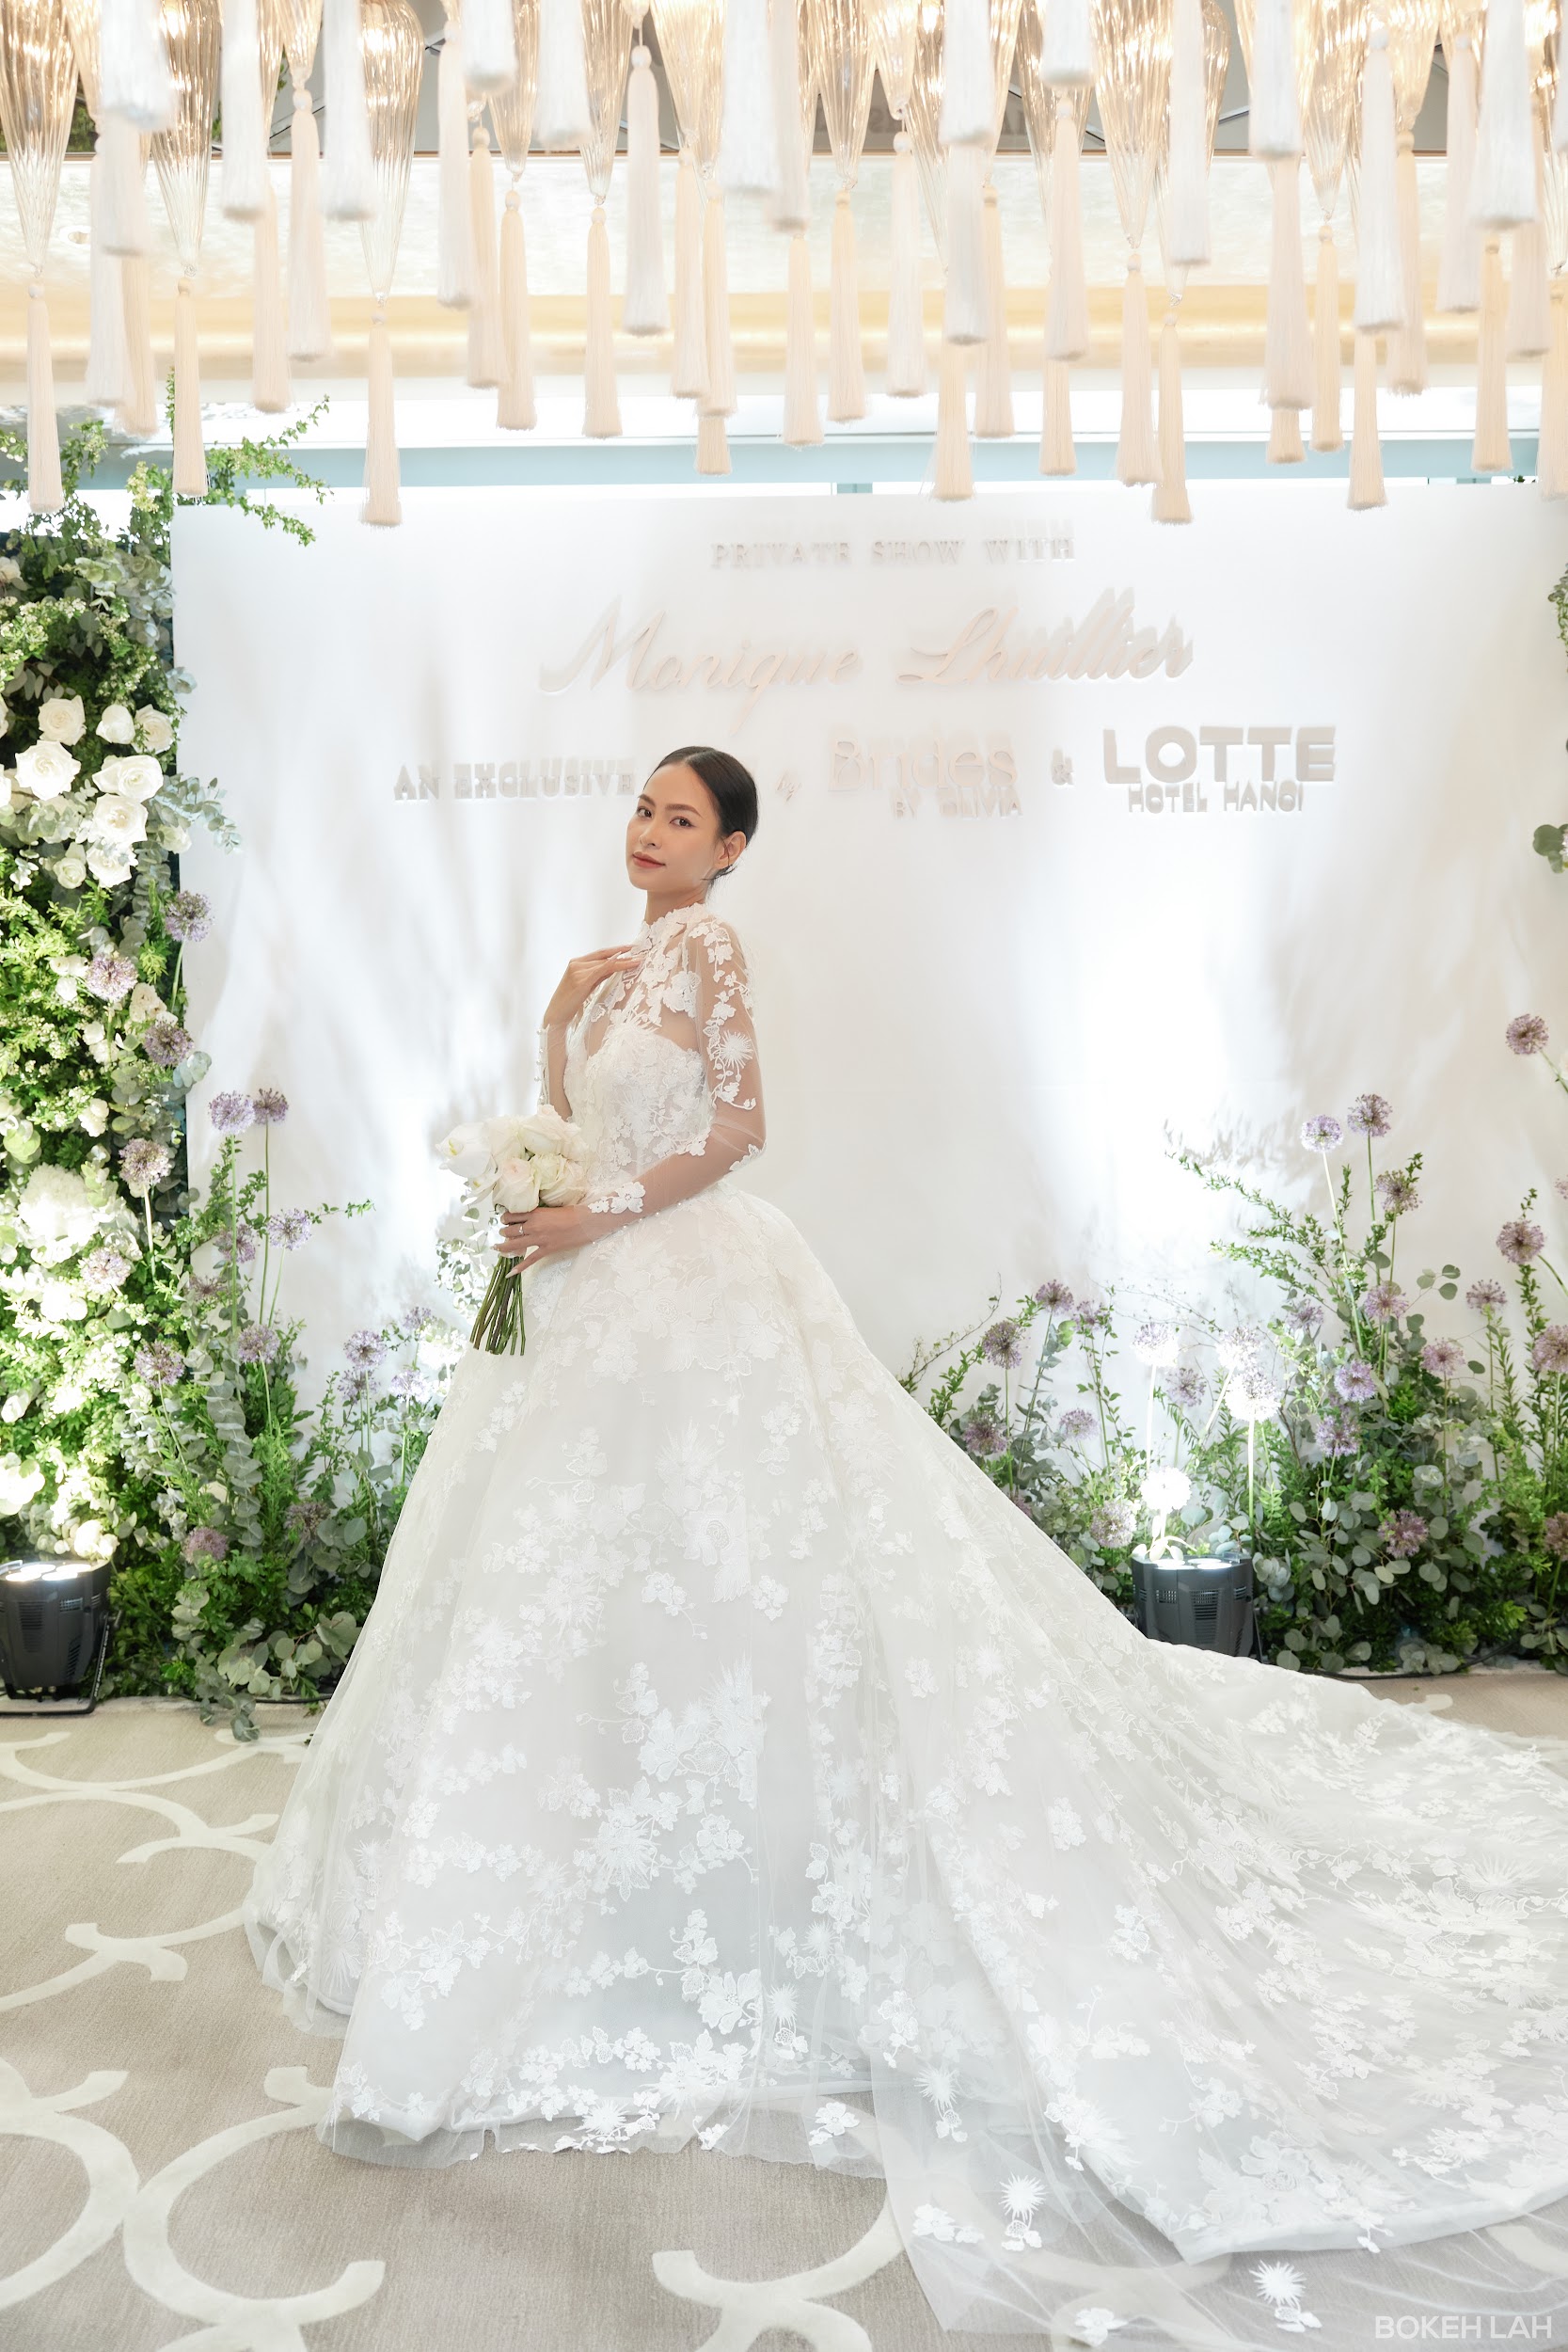 Thương hiệu cưới Monique Lhuillier ra mắt tại khách sạn Lotte Hanoi - Ảnh 2.